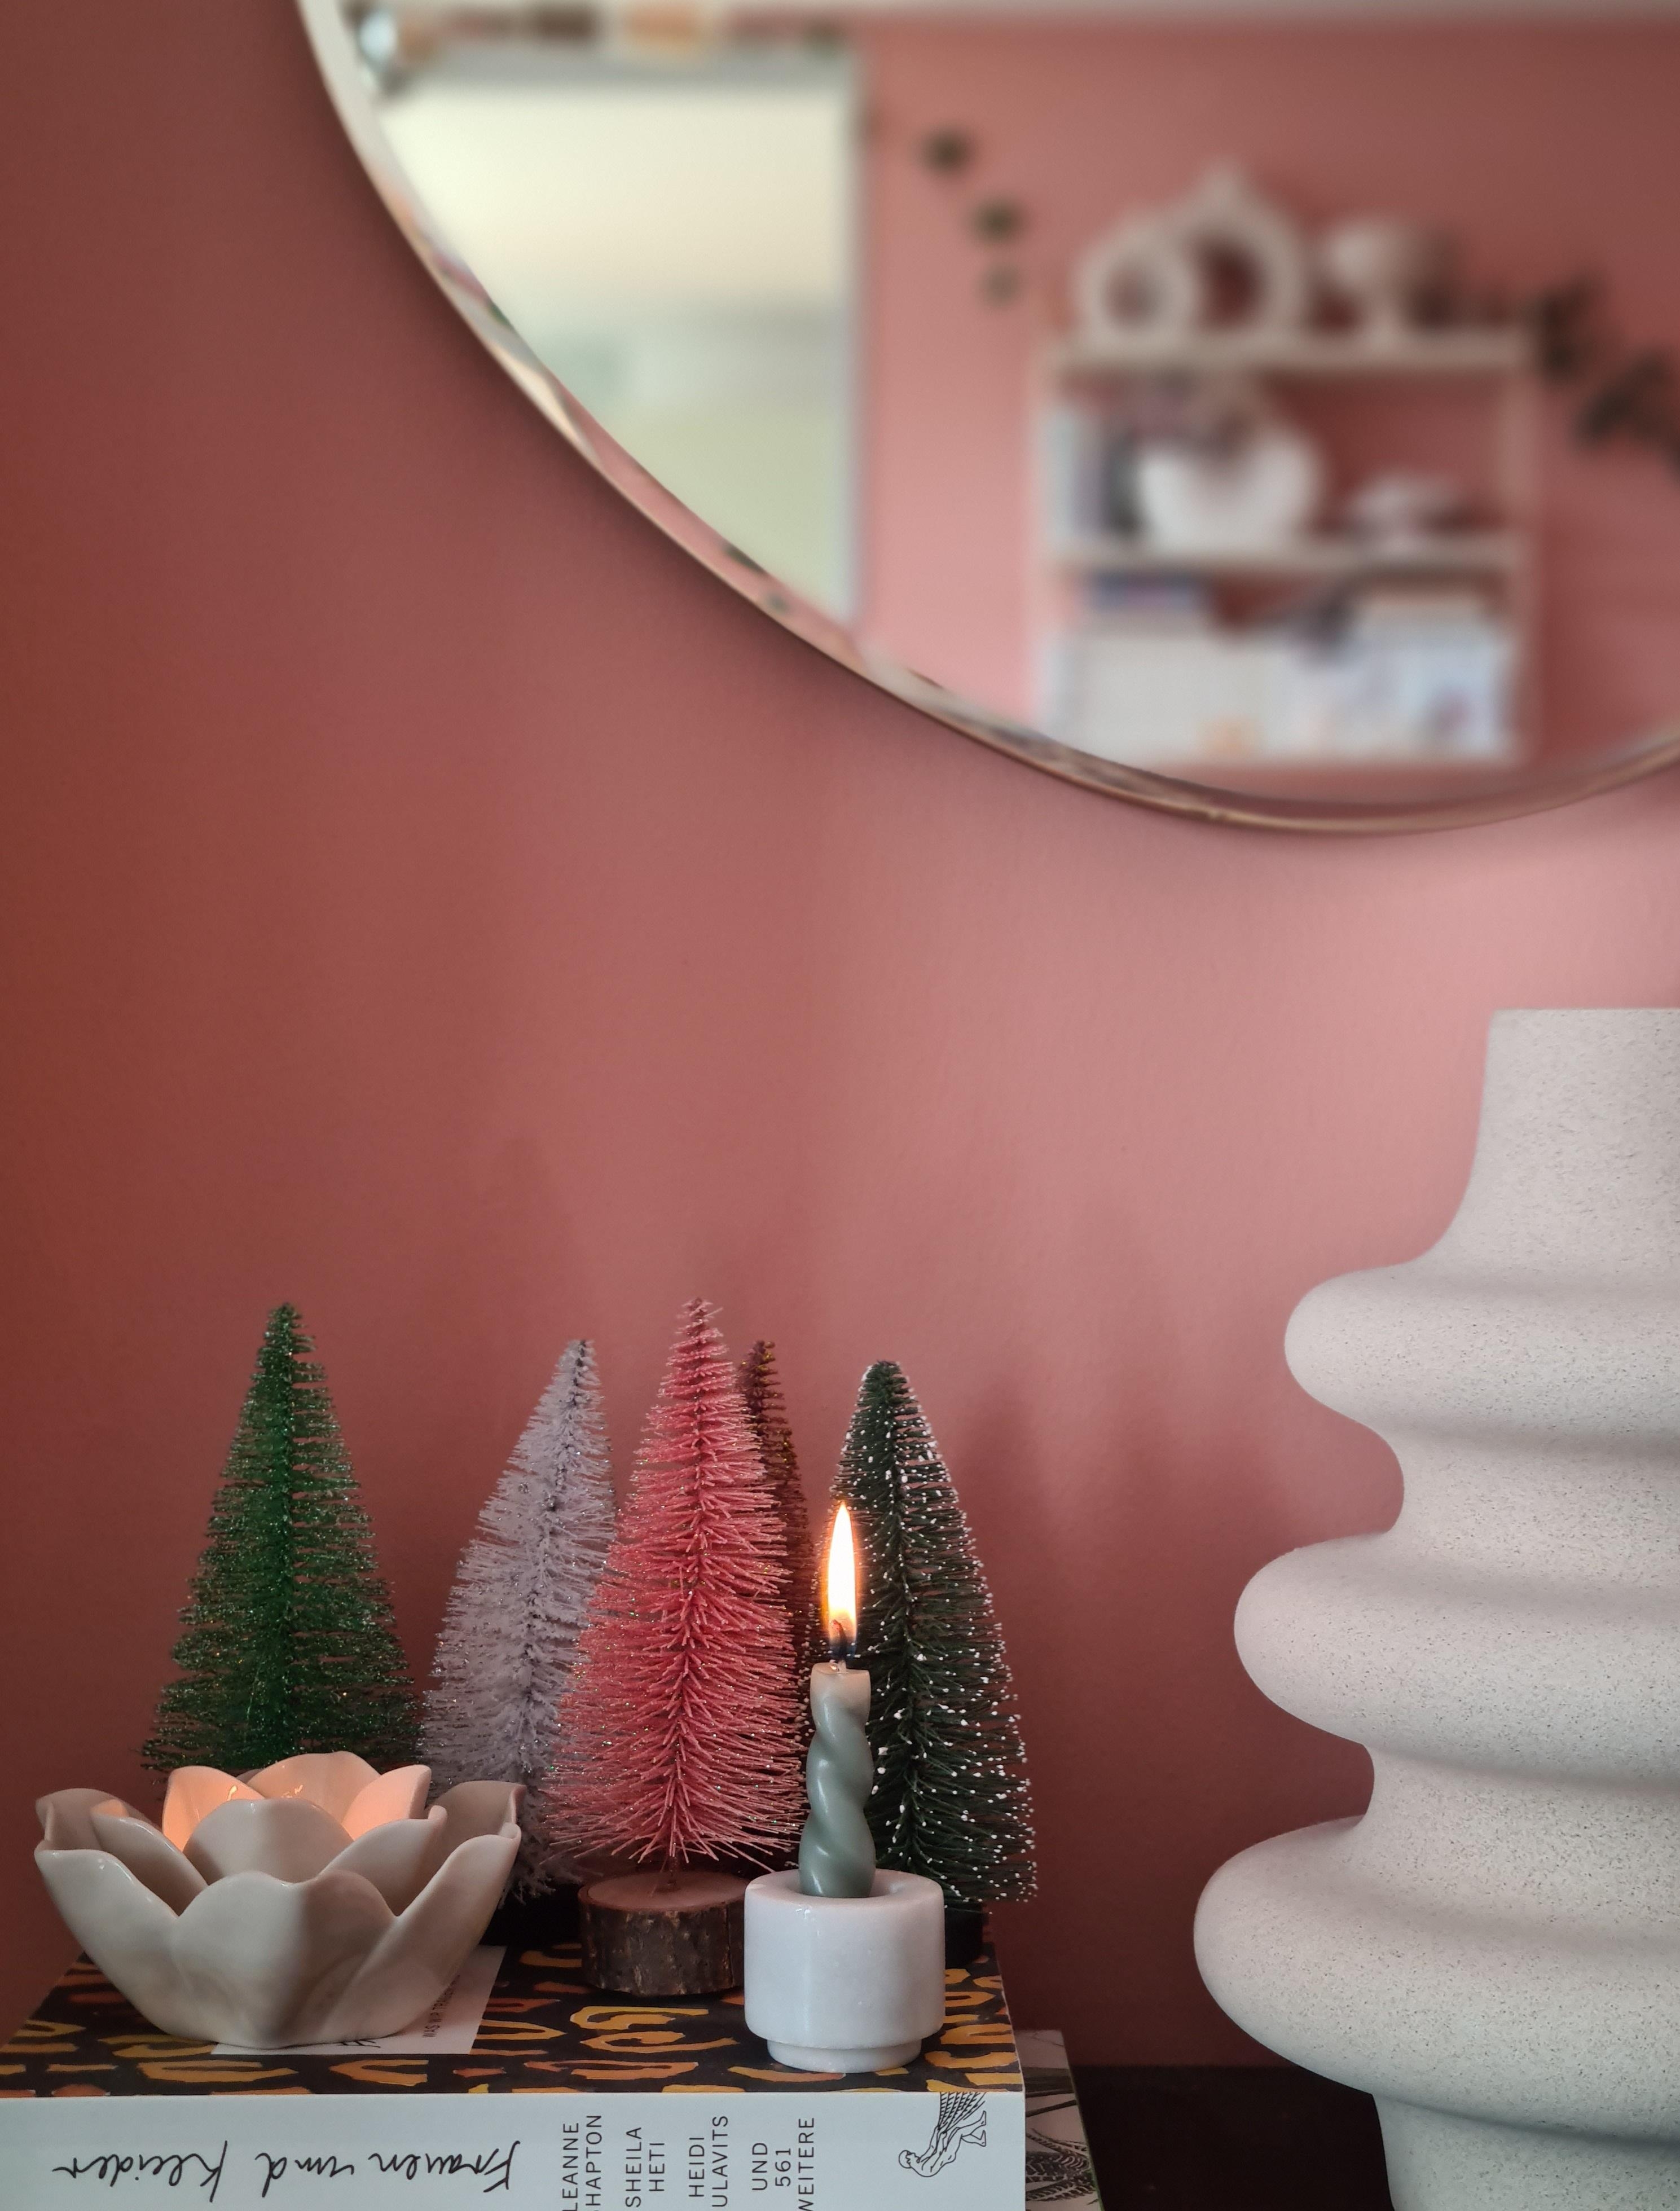 Langsam in Weihnachtsstimmung... 
#kerzen #wandfarbe #weihnachtsdeko #kerzenliebe